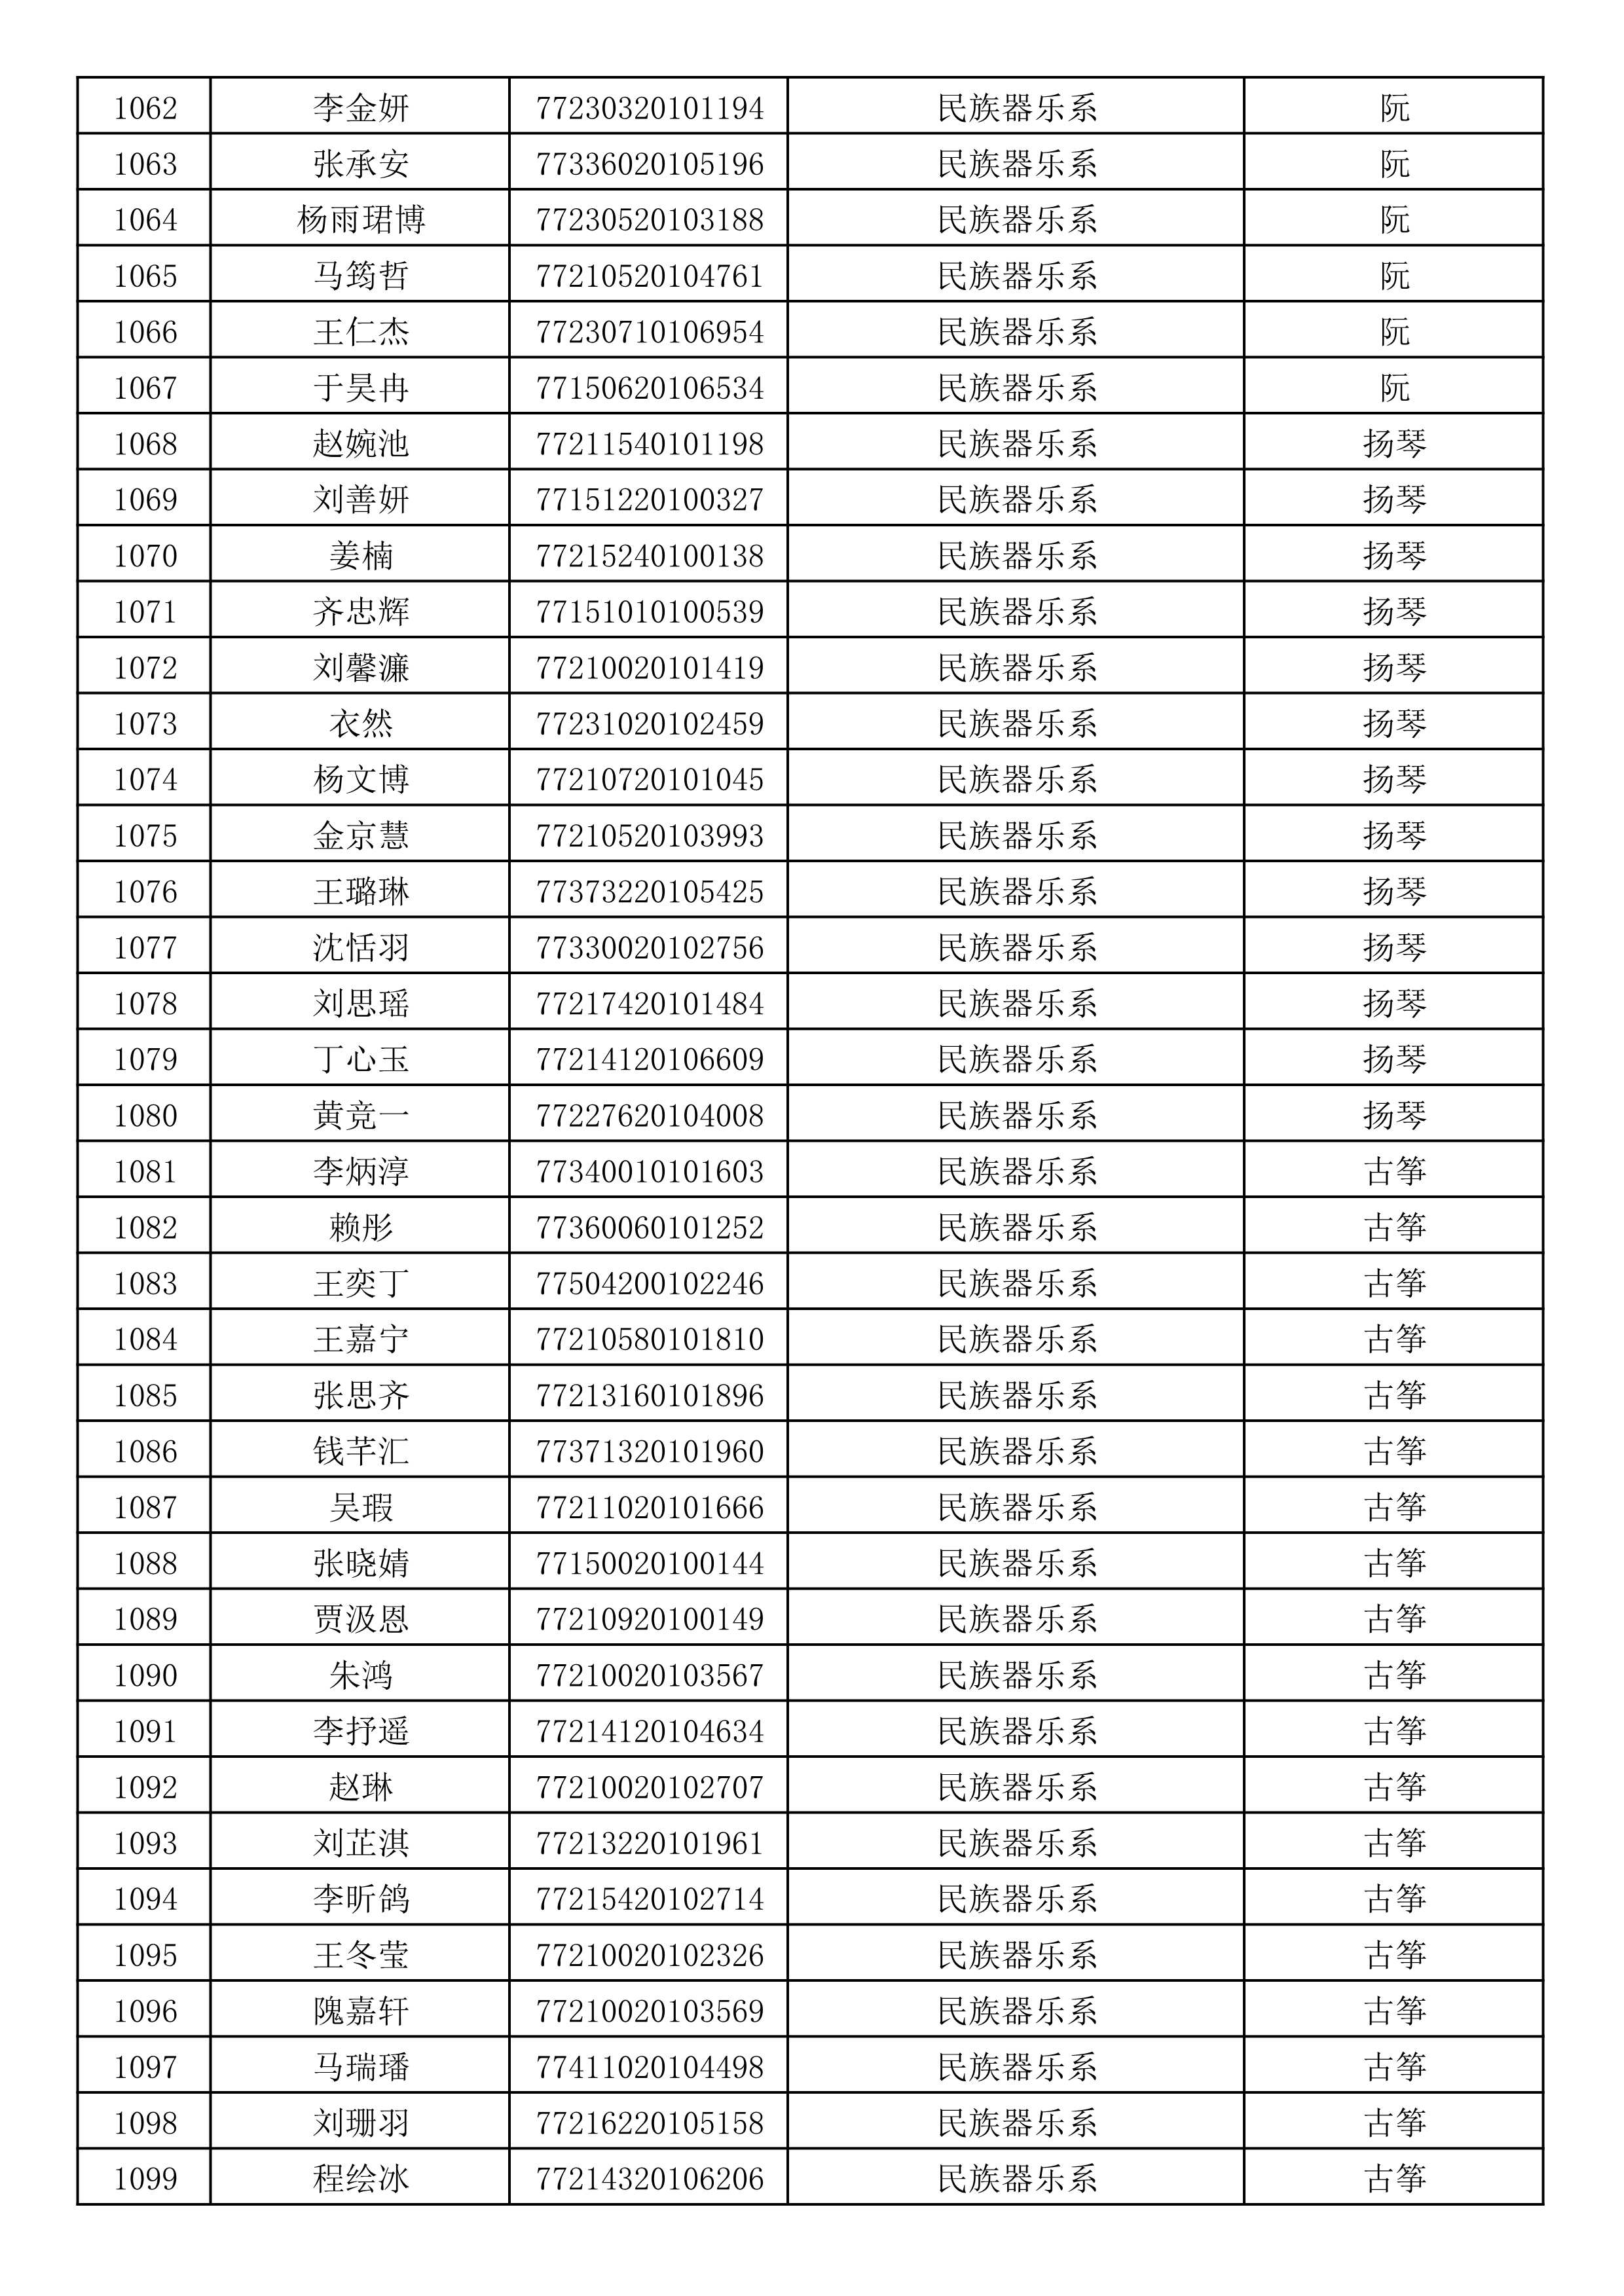 沈阳音乐学院2019年本科招生考试初试合格名单_29.jpg